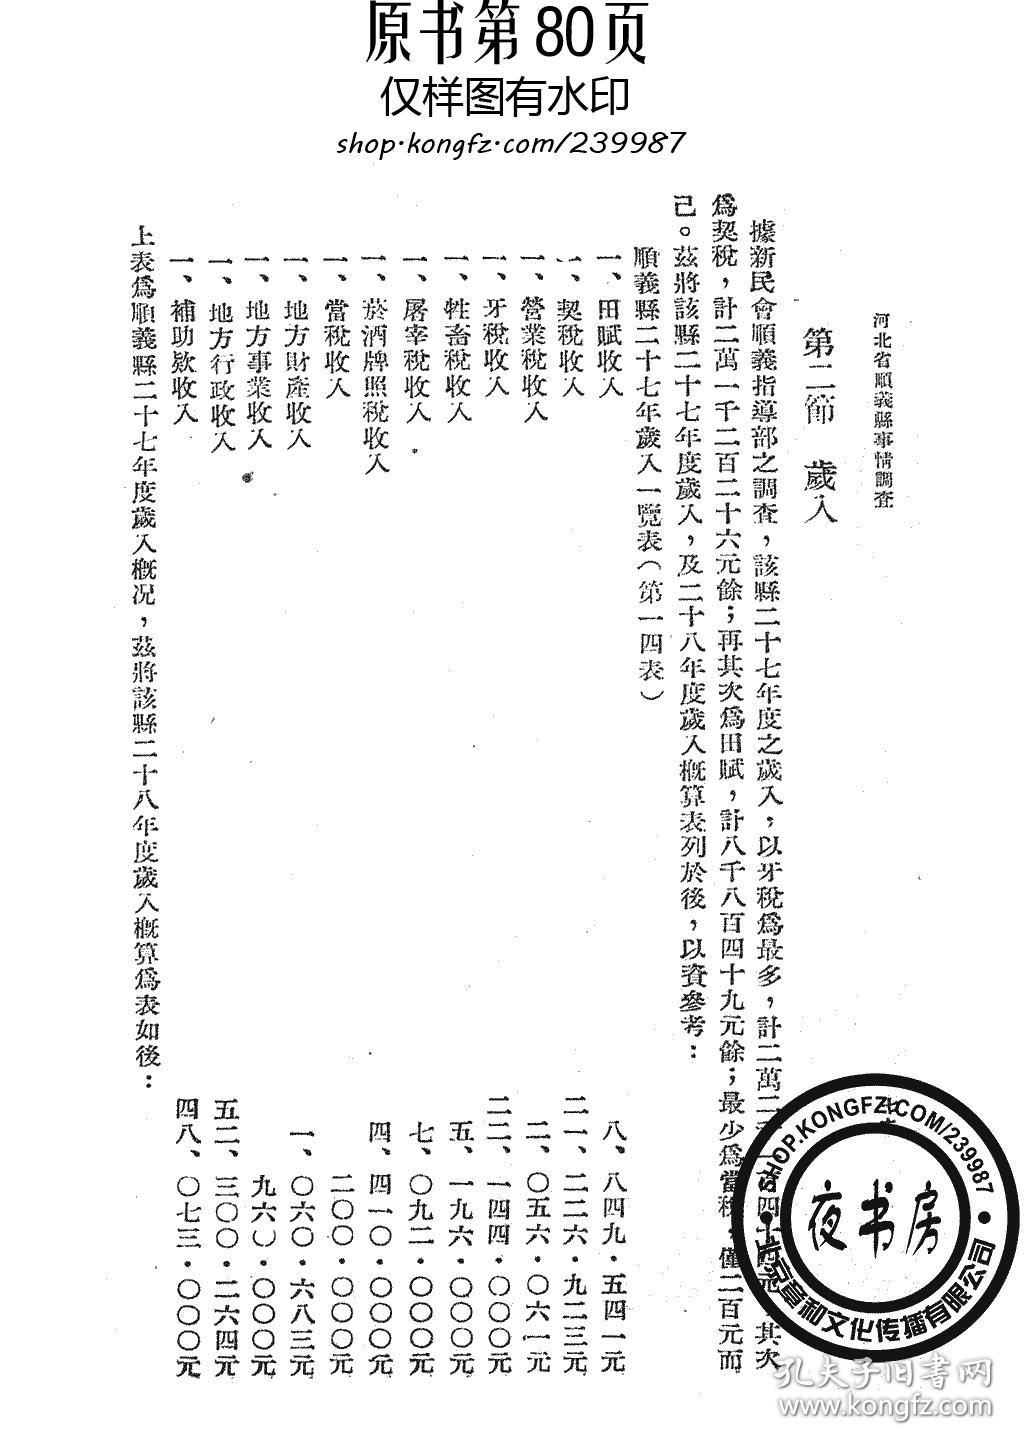 河北省顺义县事情-1941年版-(复印本)图片